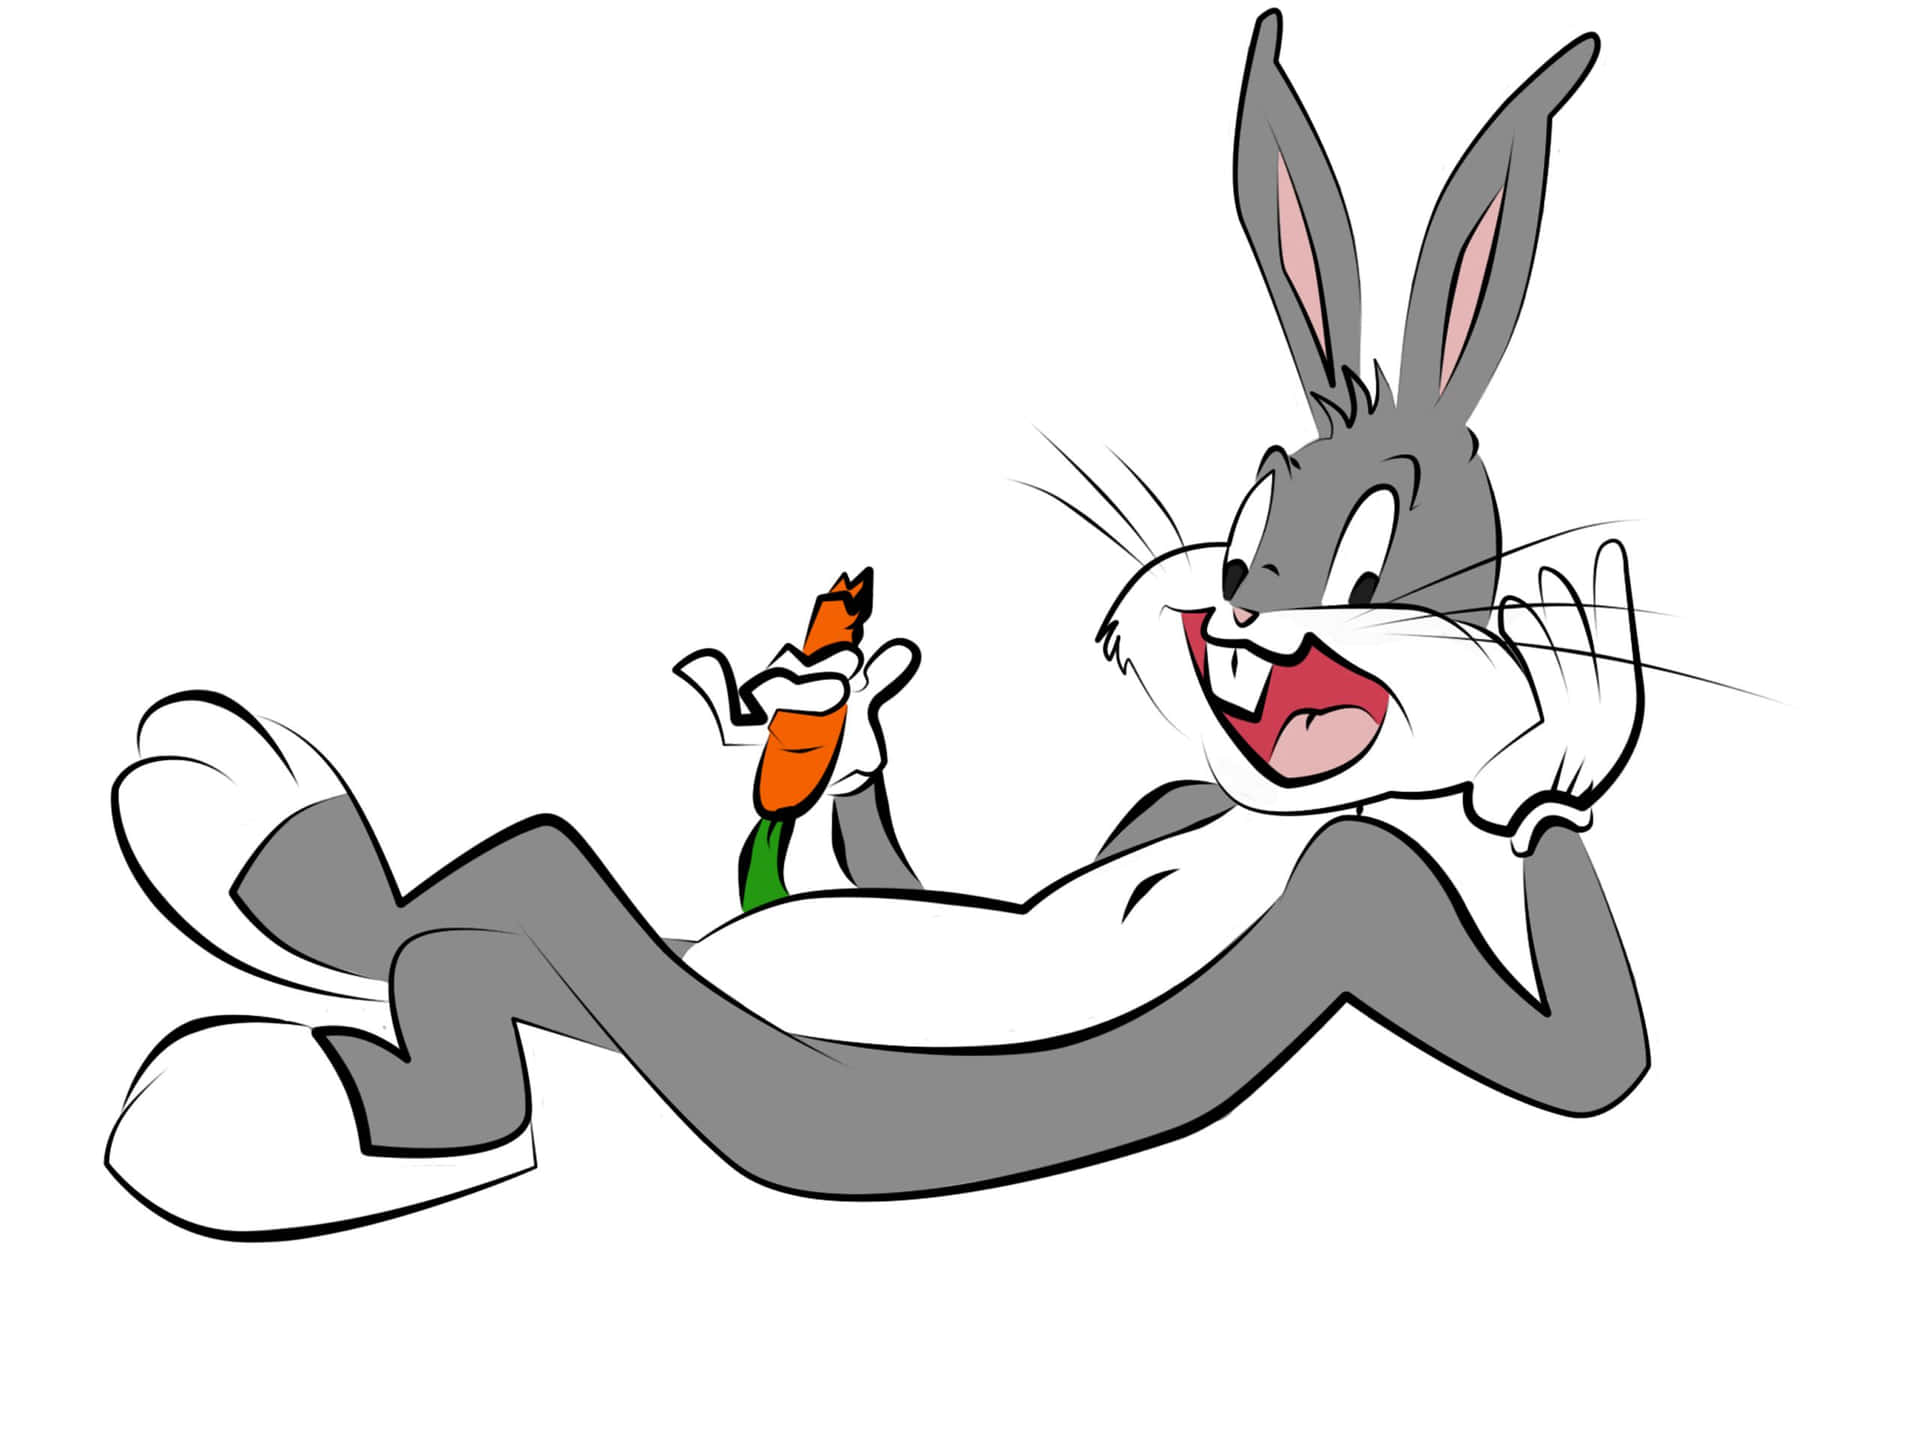 Un'immaginefantastica Di Bugs Bunny Che Sorride Nel Suo Iconico Vestito Sfondo